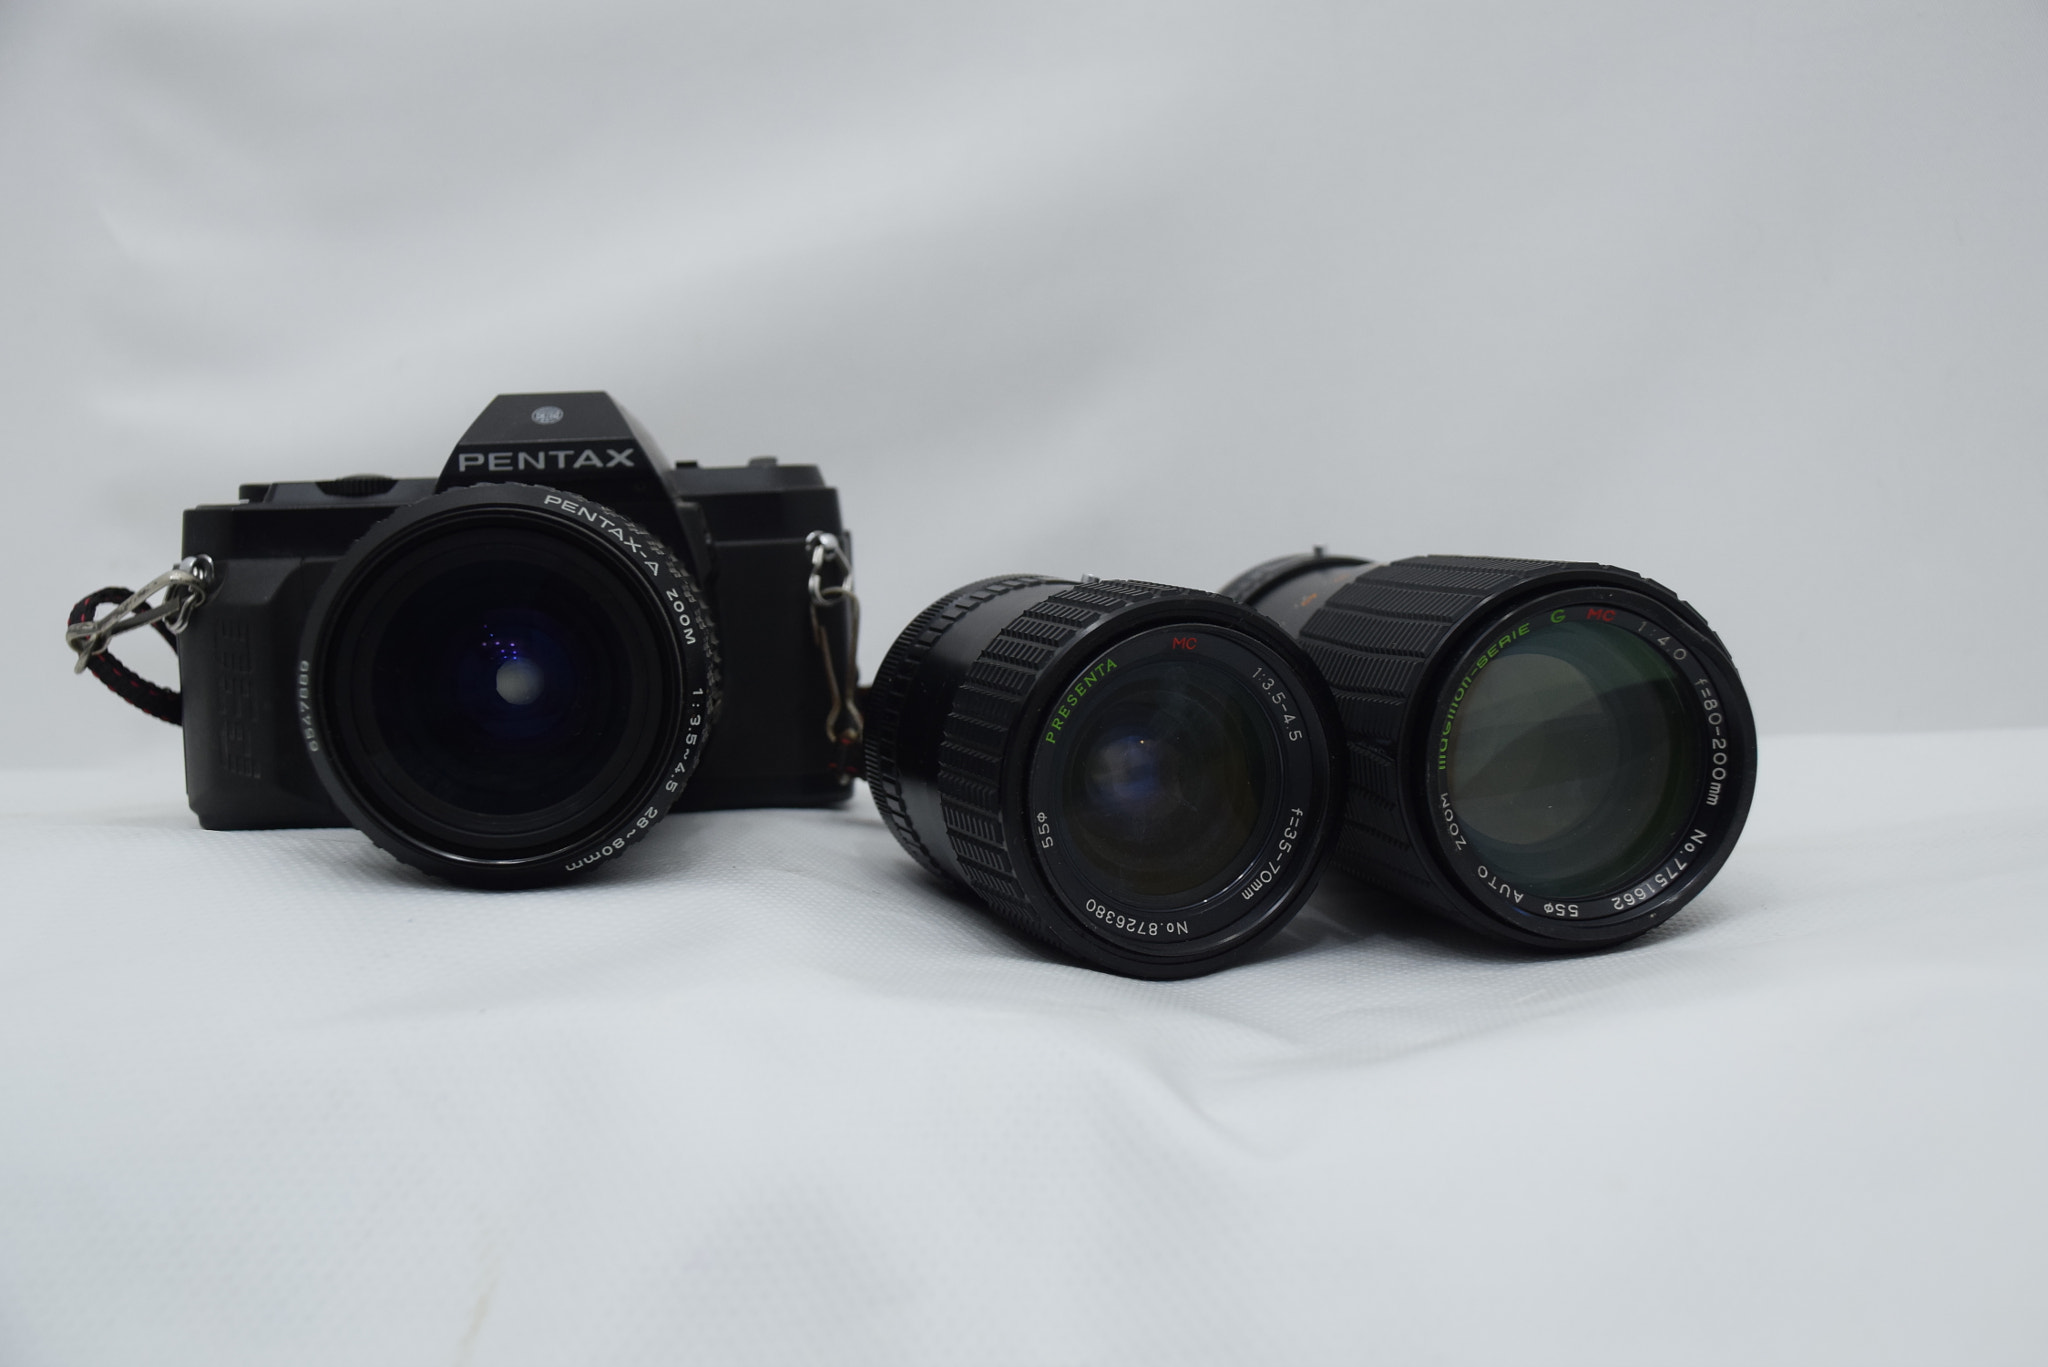 Nikon D5300 sample photo. Pentax photography